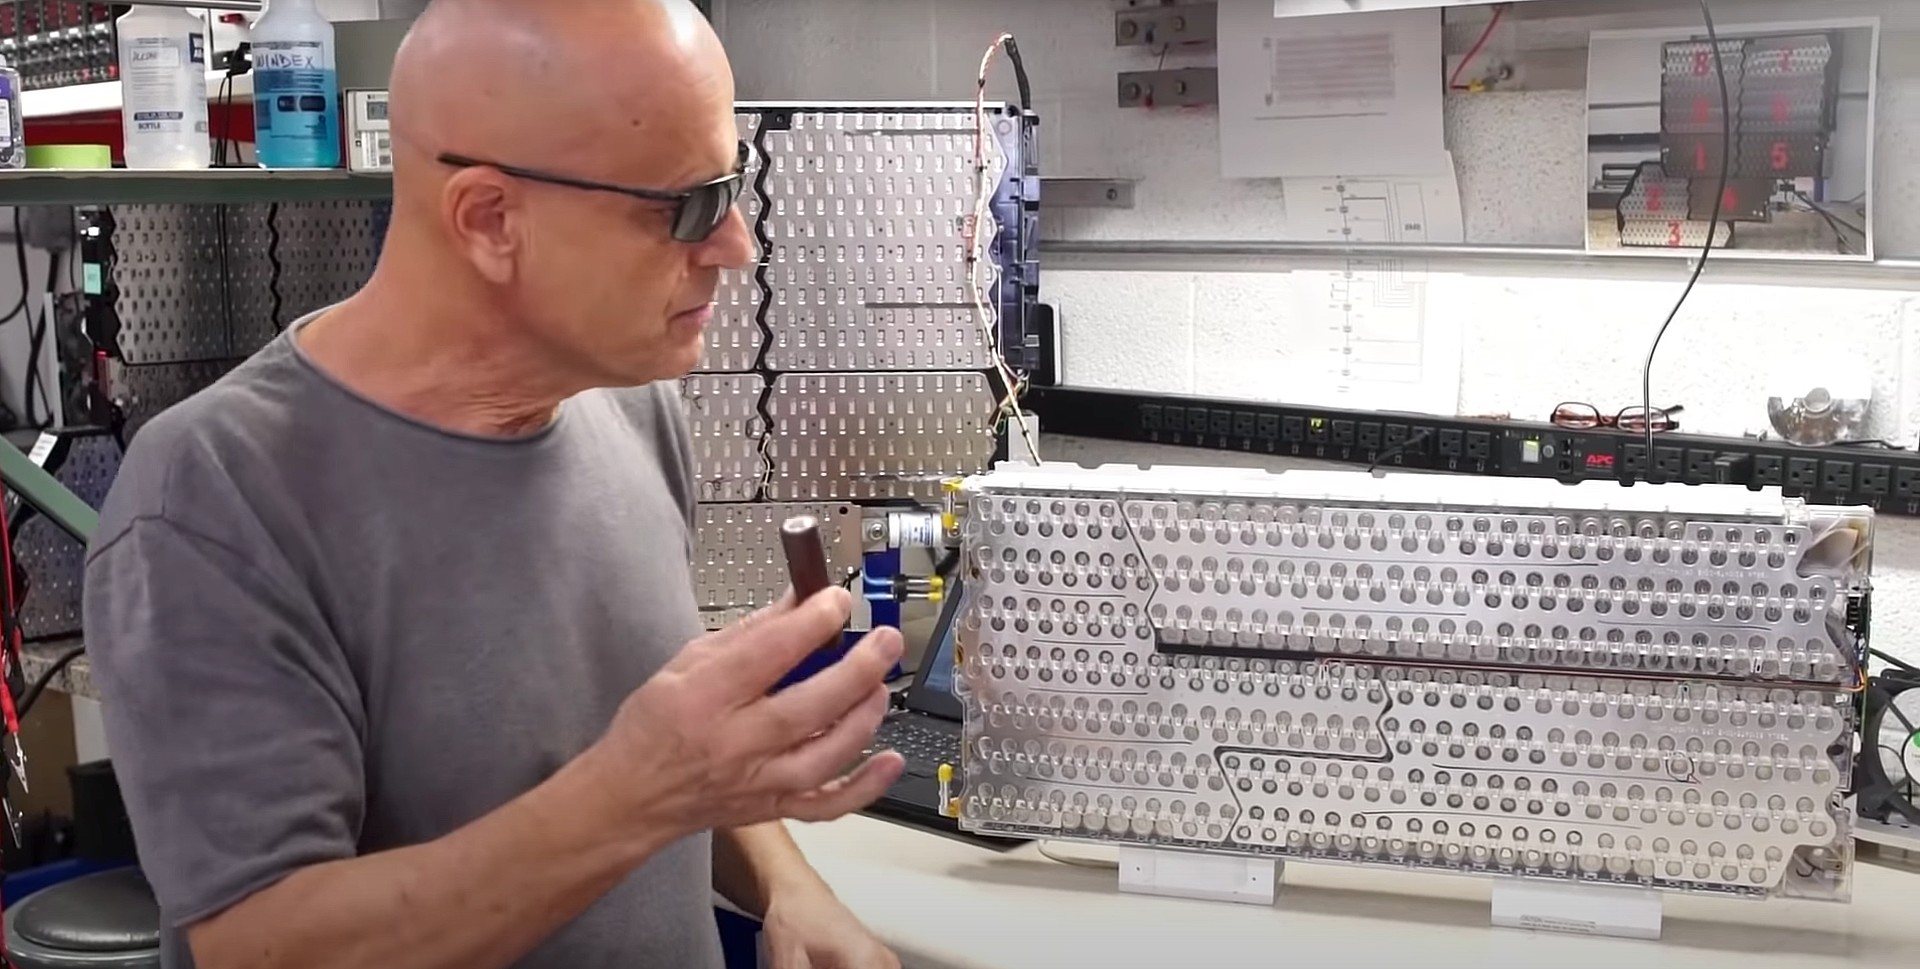 waterstof Buiten Bijdragen Tesla veteran tuner showcases how to revive an aging Model S battery pack